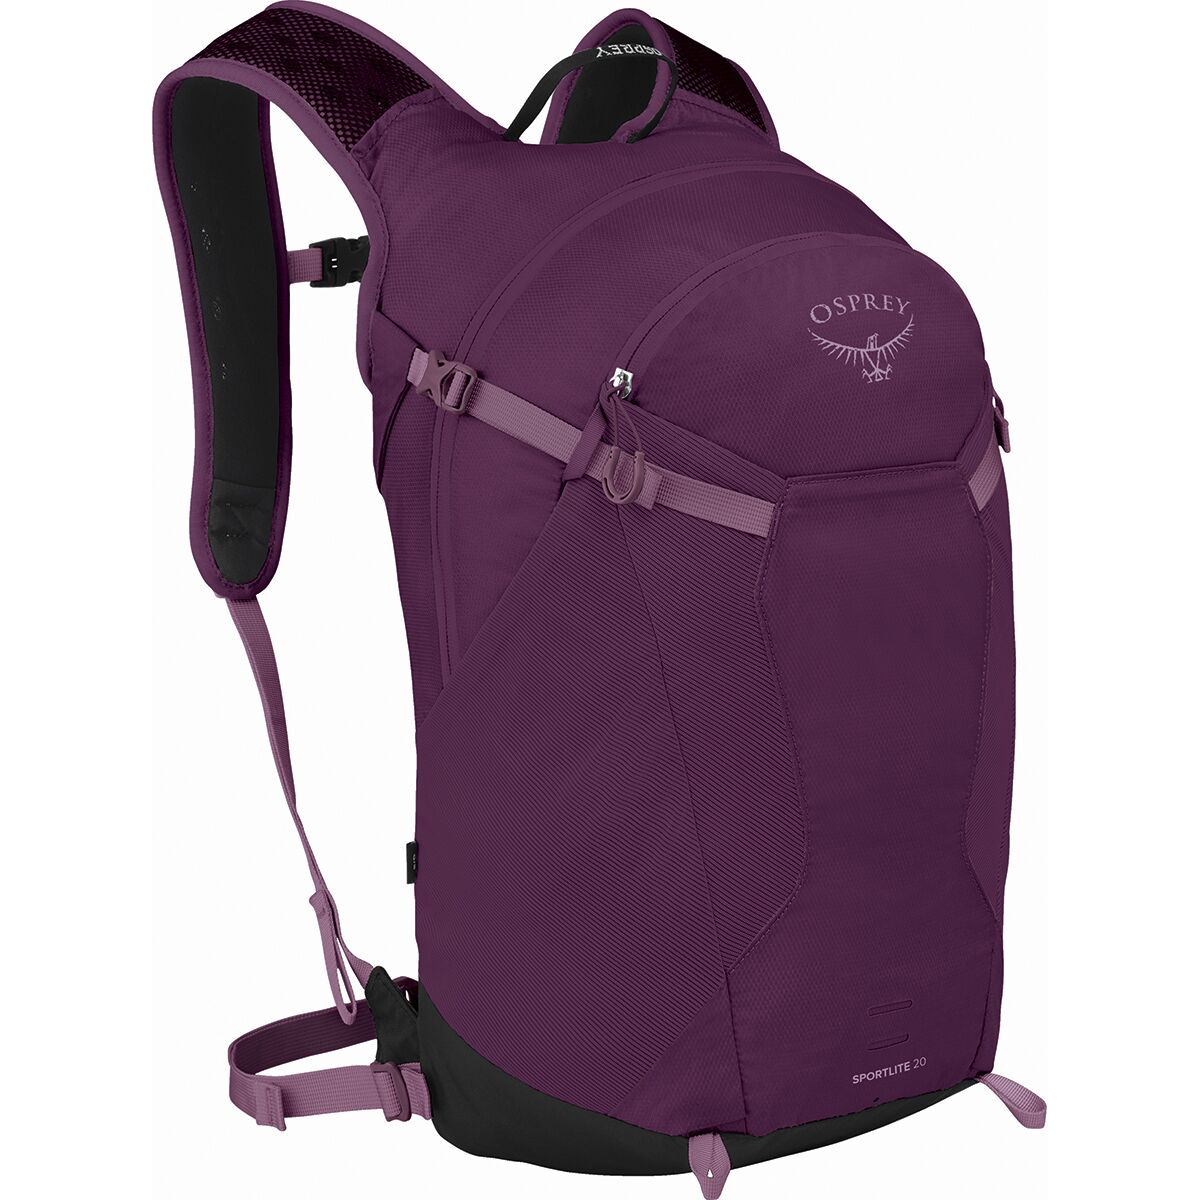 Osprey Packs Sportlite 20 Backpack